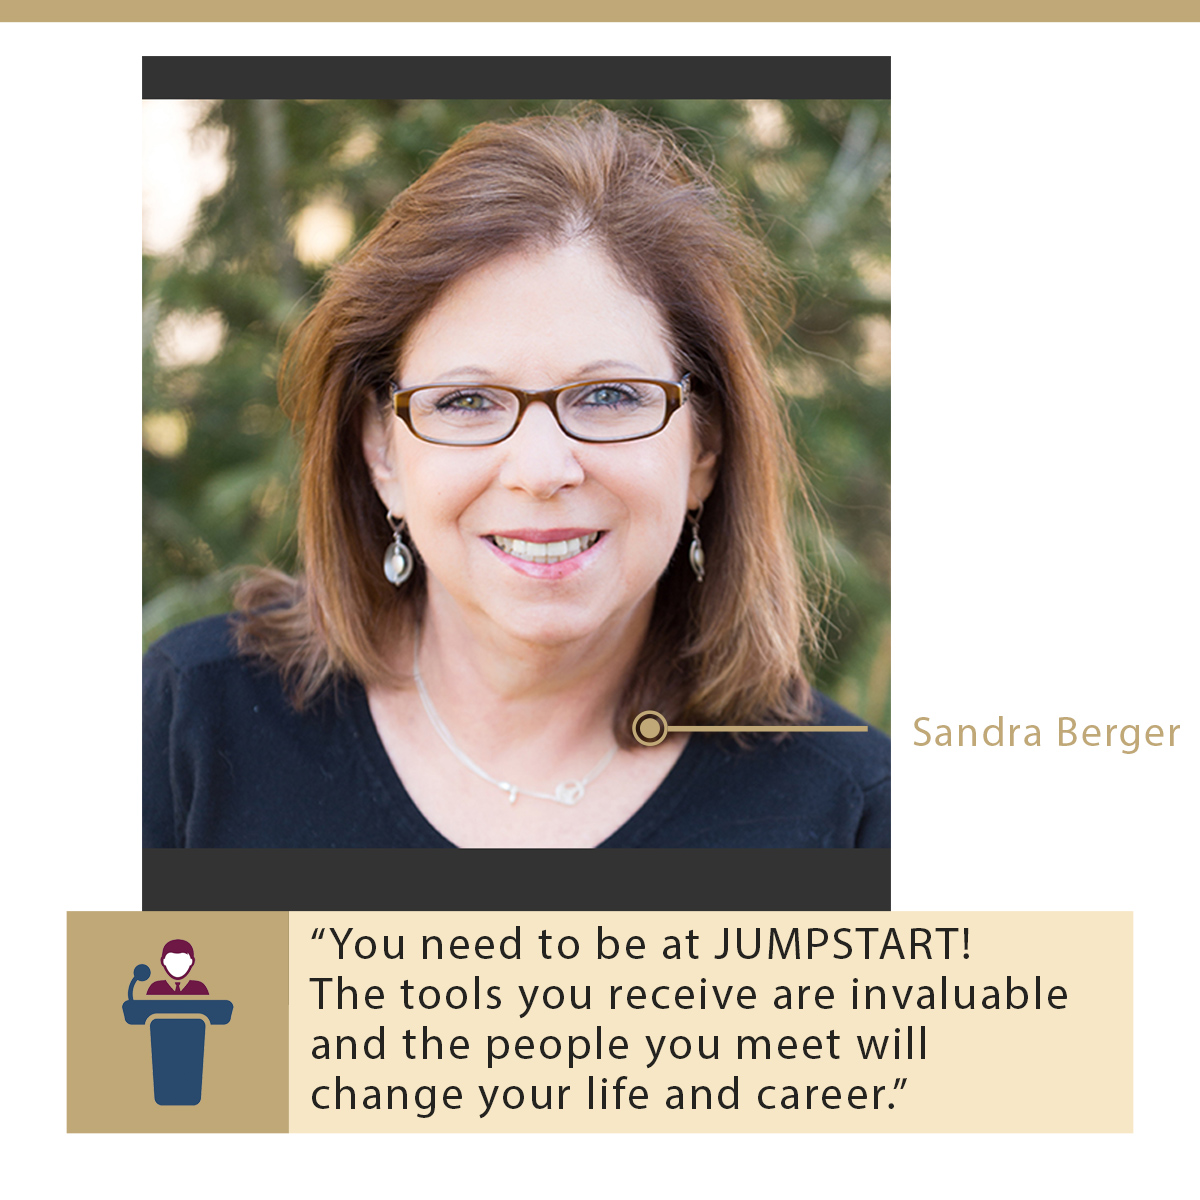 Sandra Berger review on Jumpstart Dental Meeting